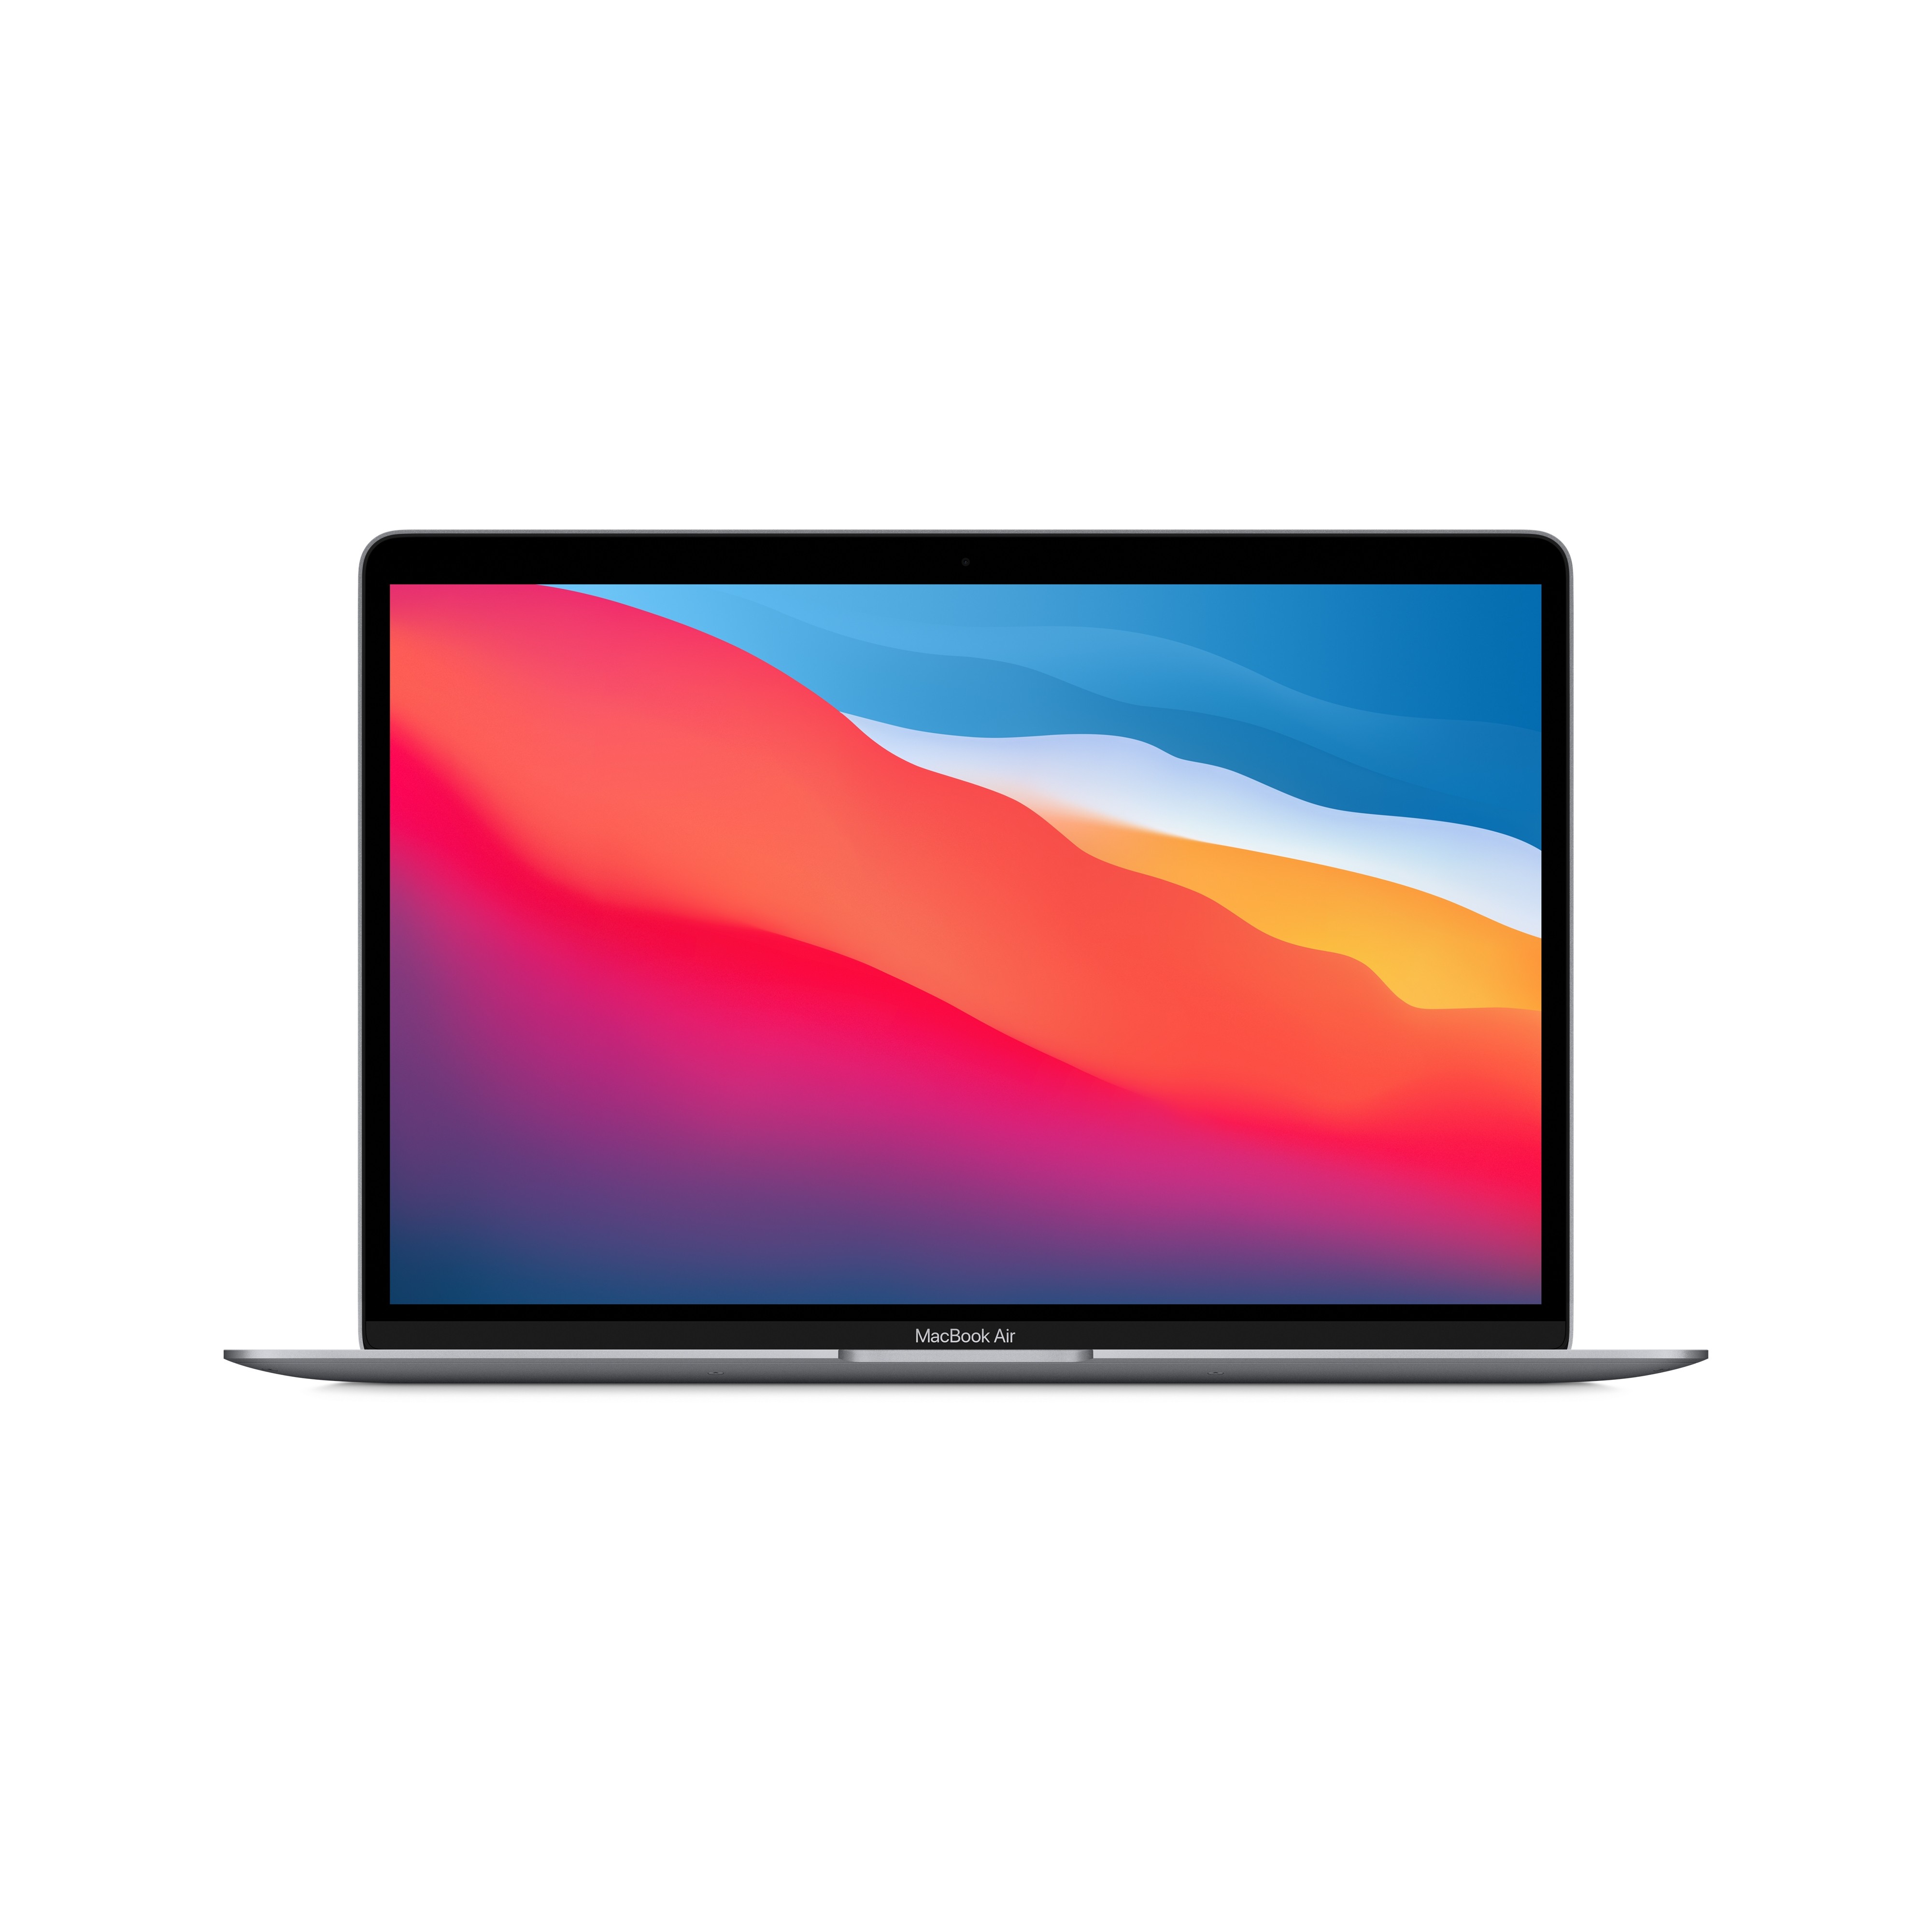 13 inch macbook pro student discount